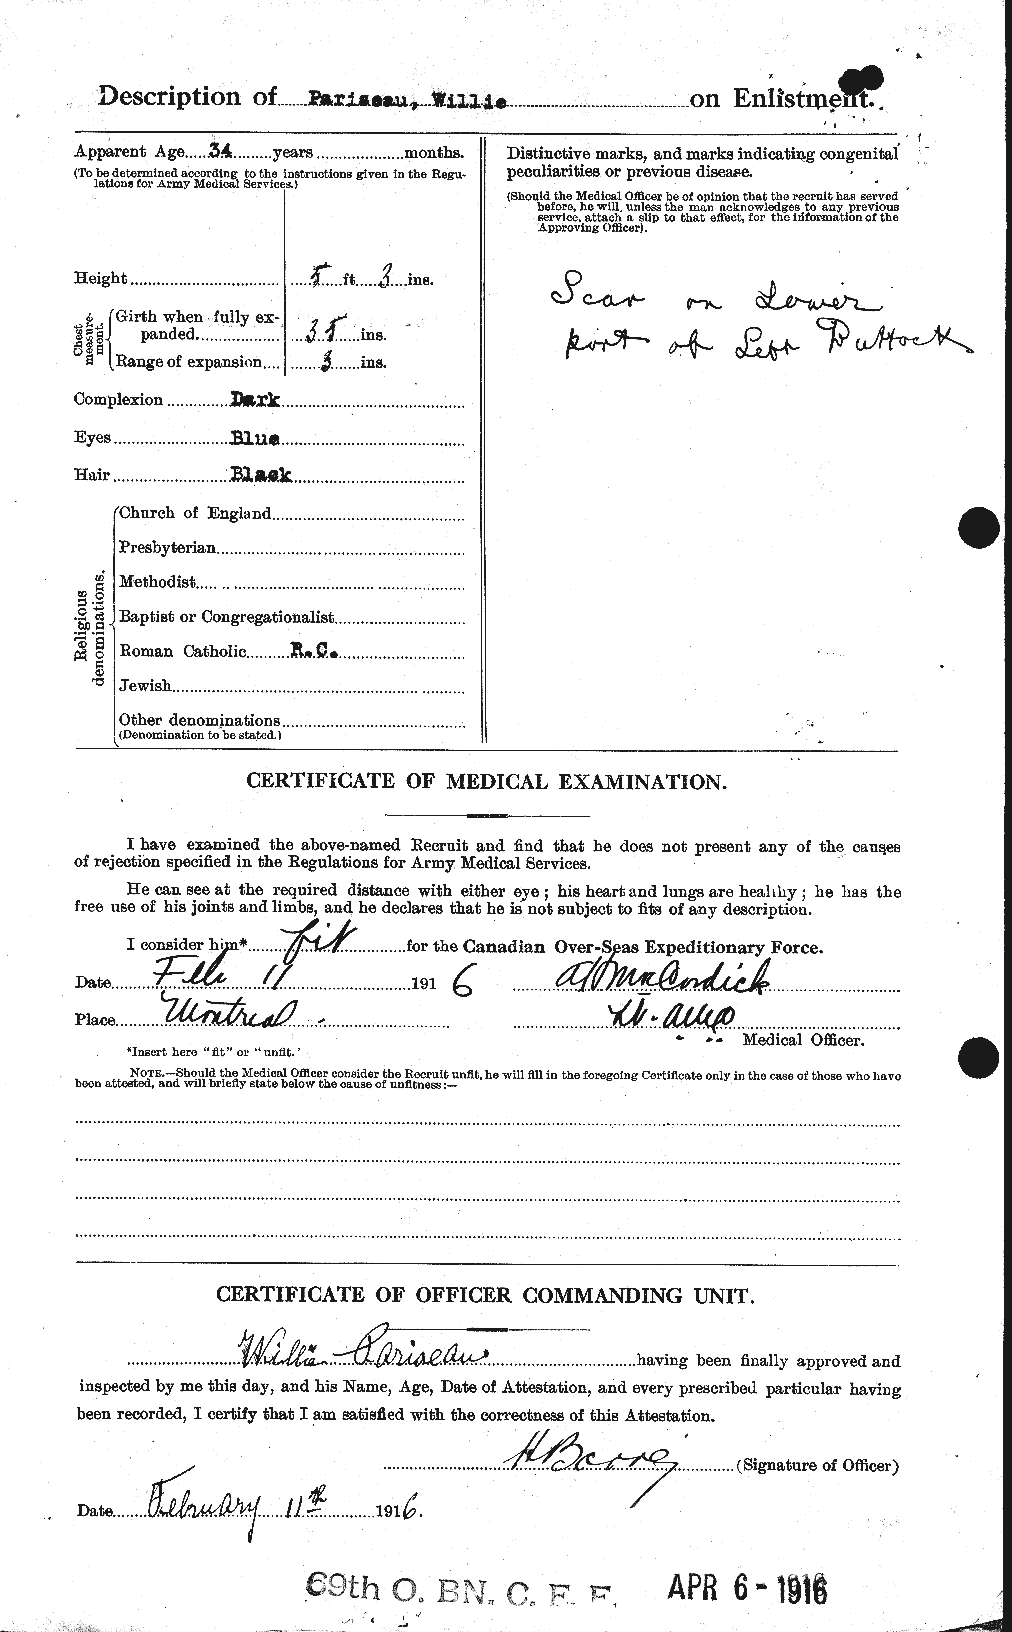 Dossiers du Personnel de la Première Guerre mondiale - CEC 564658b